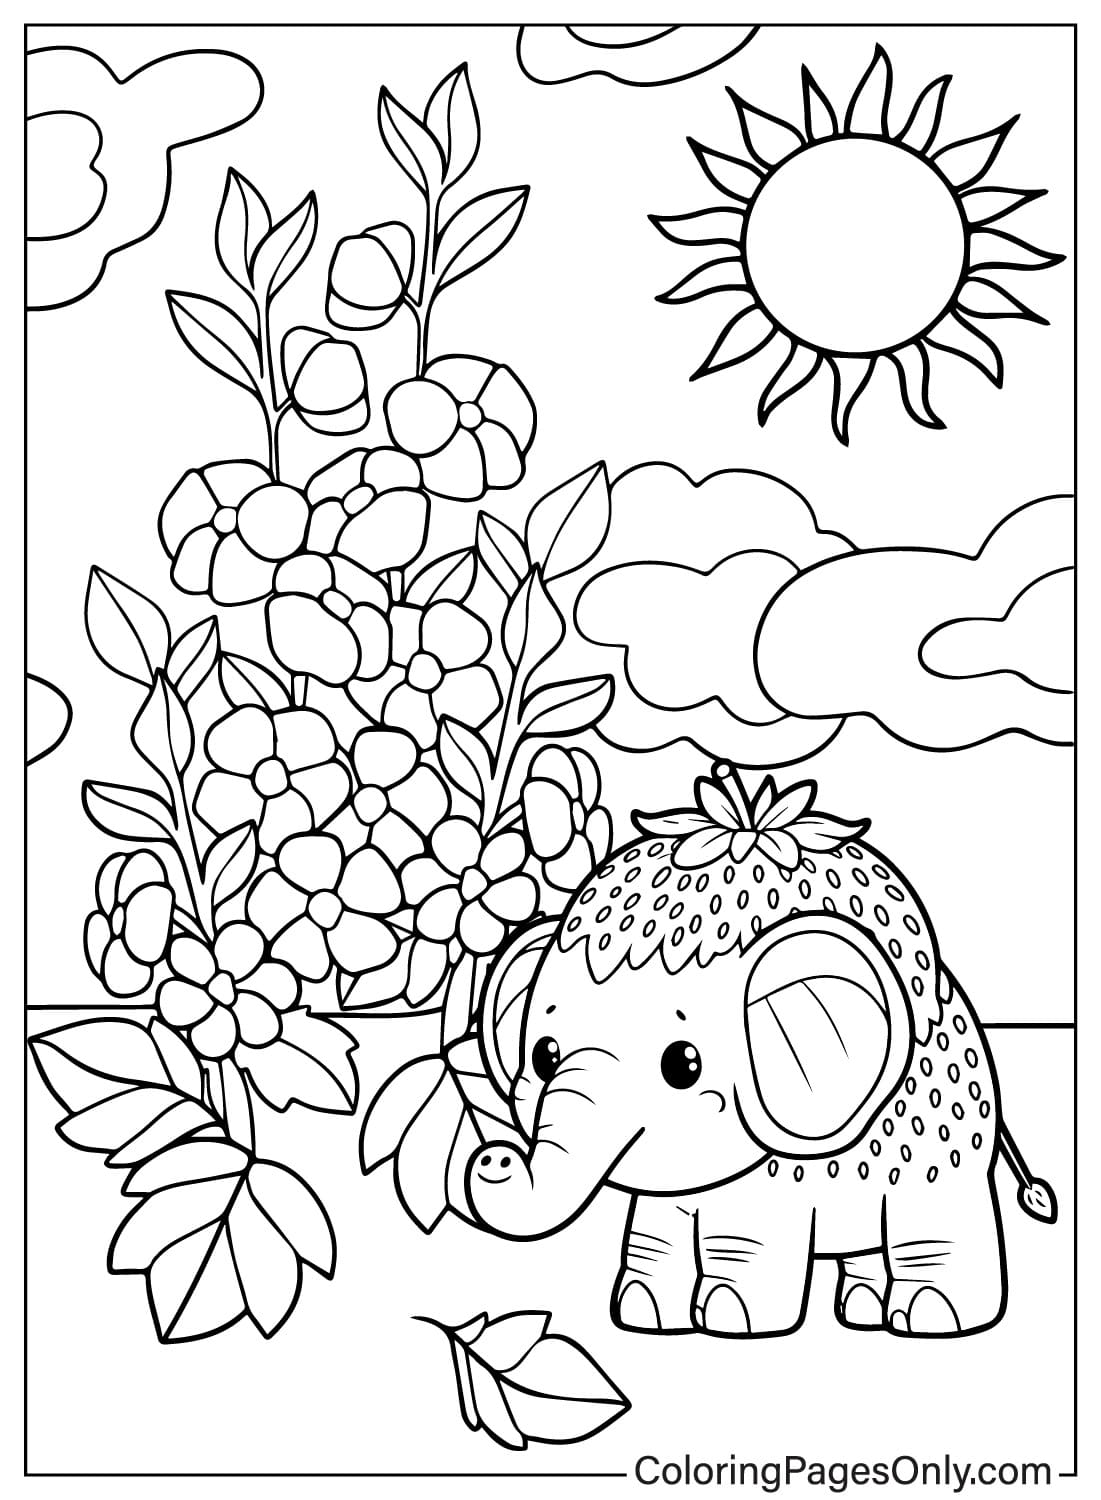 Página para colorear de Elefante de Fresa imprimible de Elefante de Fresa